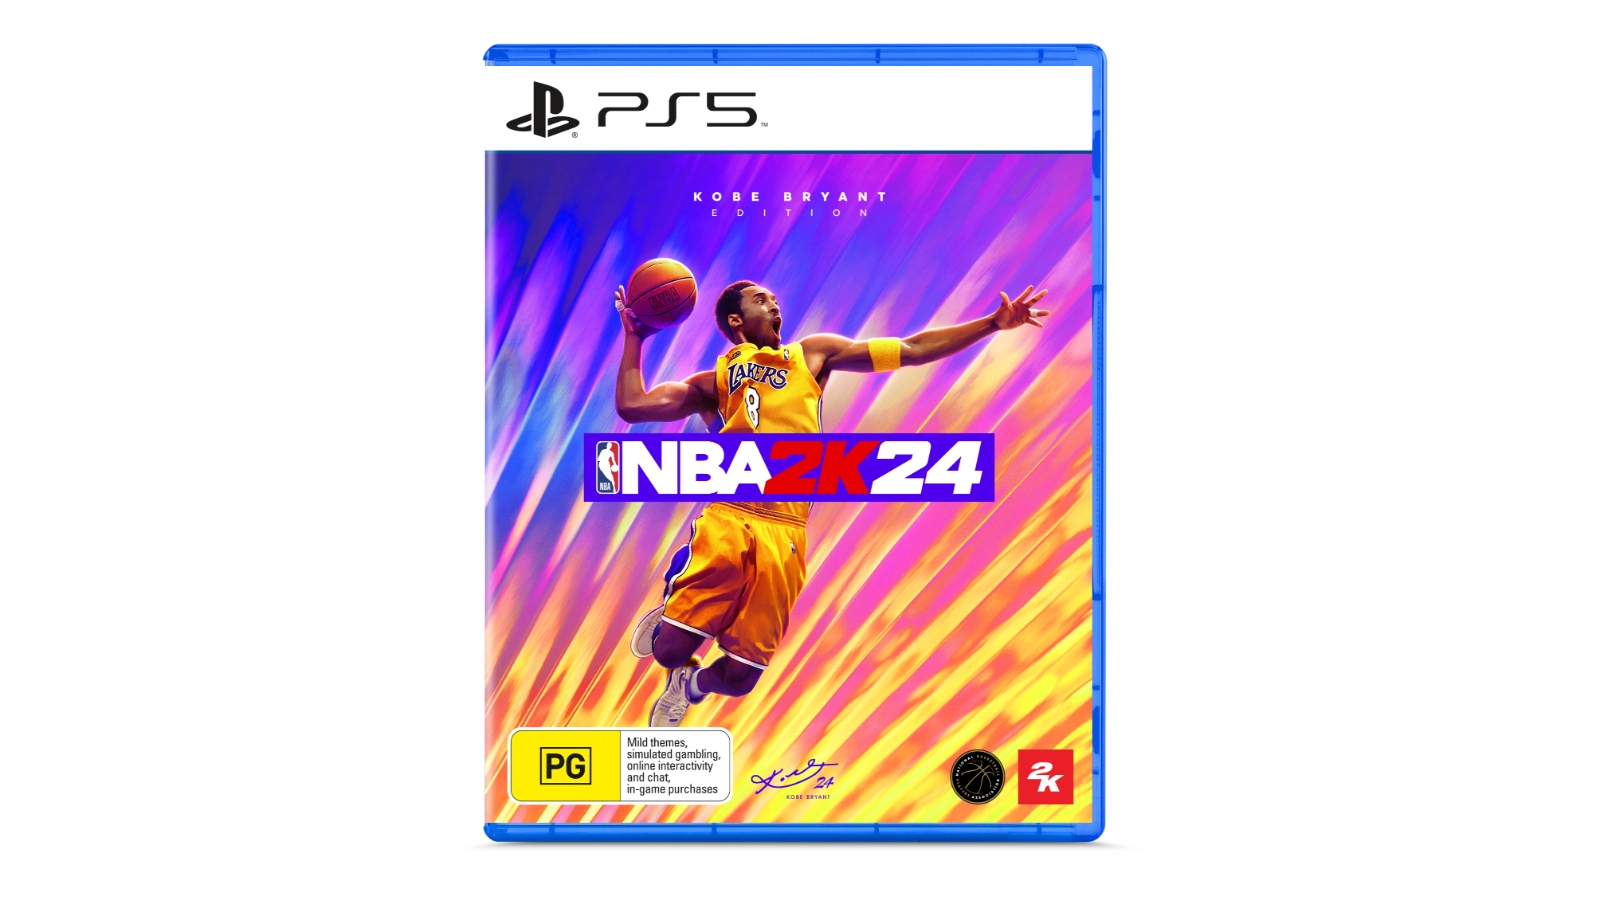 Kobe Bryant in NBA 2K24 Video Game 4K Wallpaper